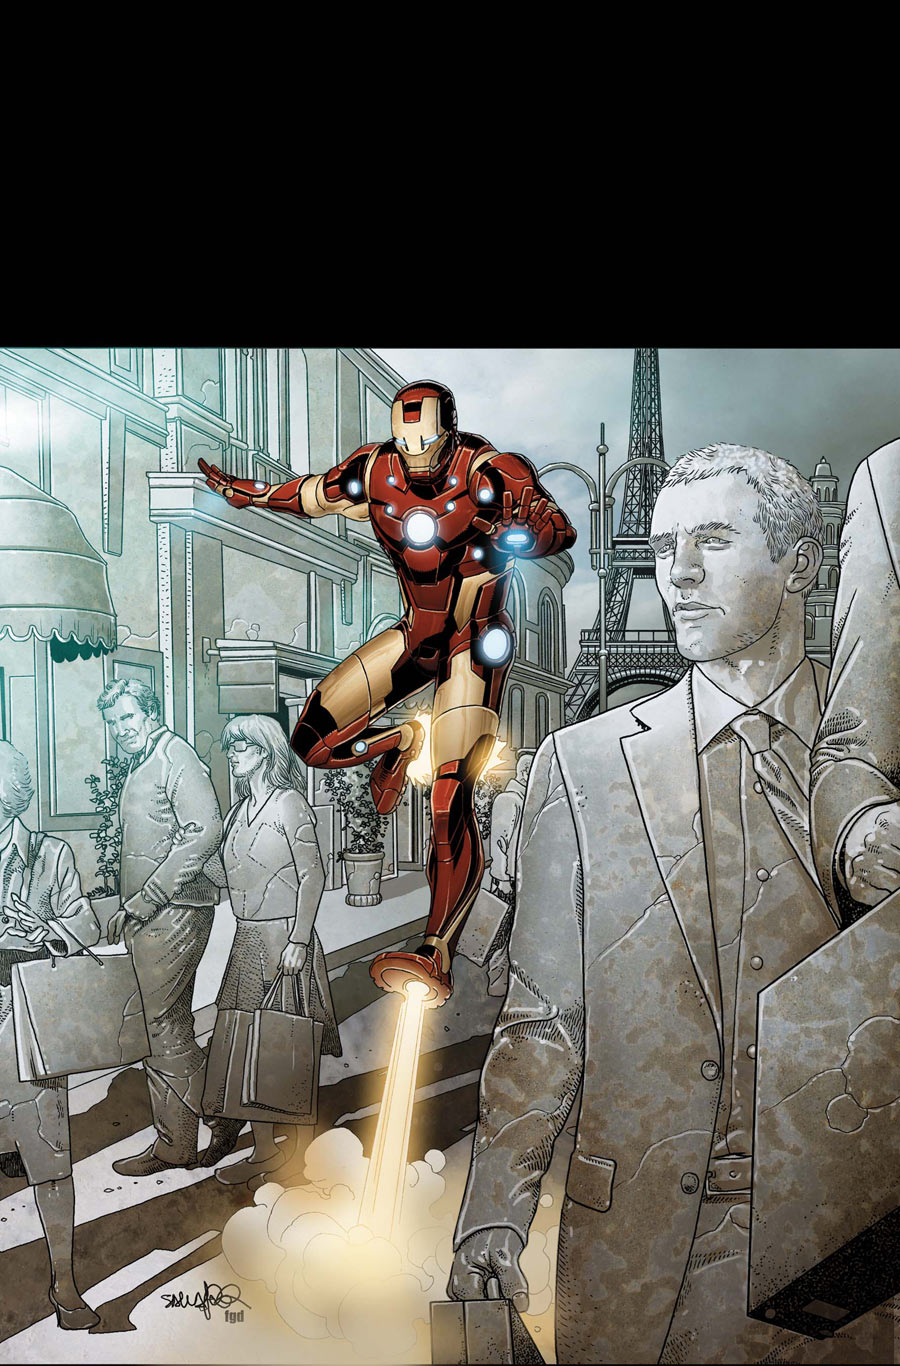 Invincible Iron Man #504